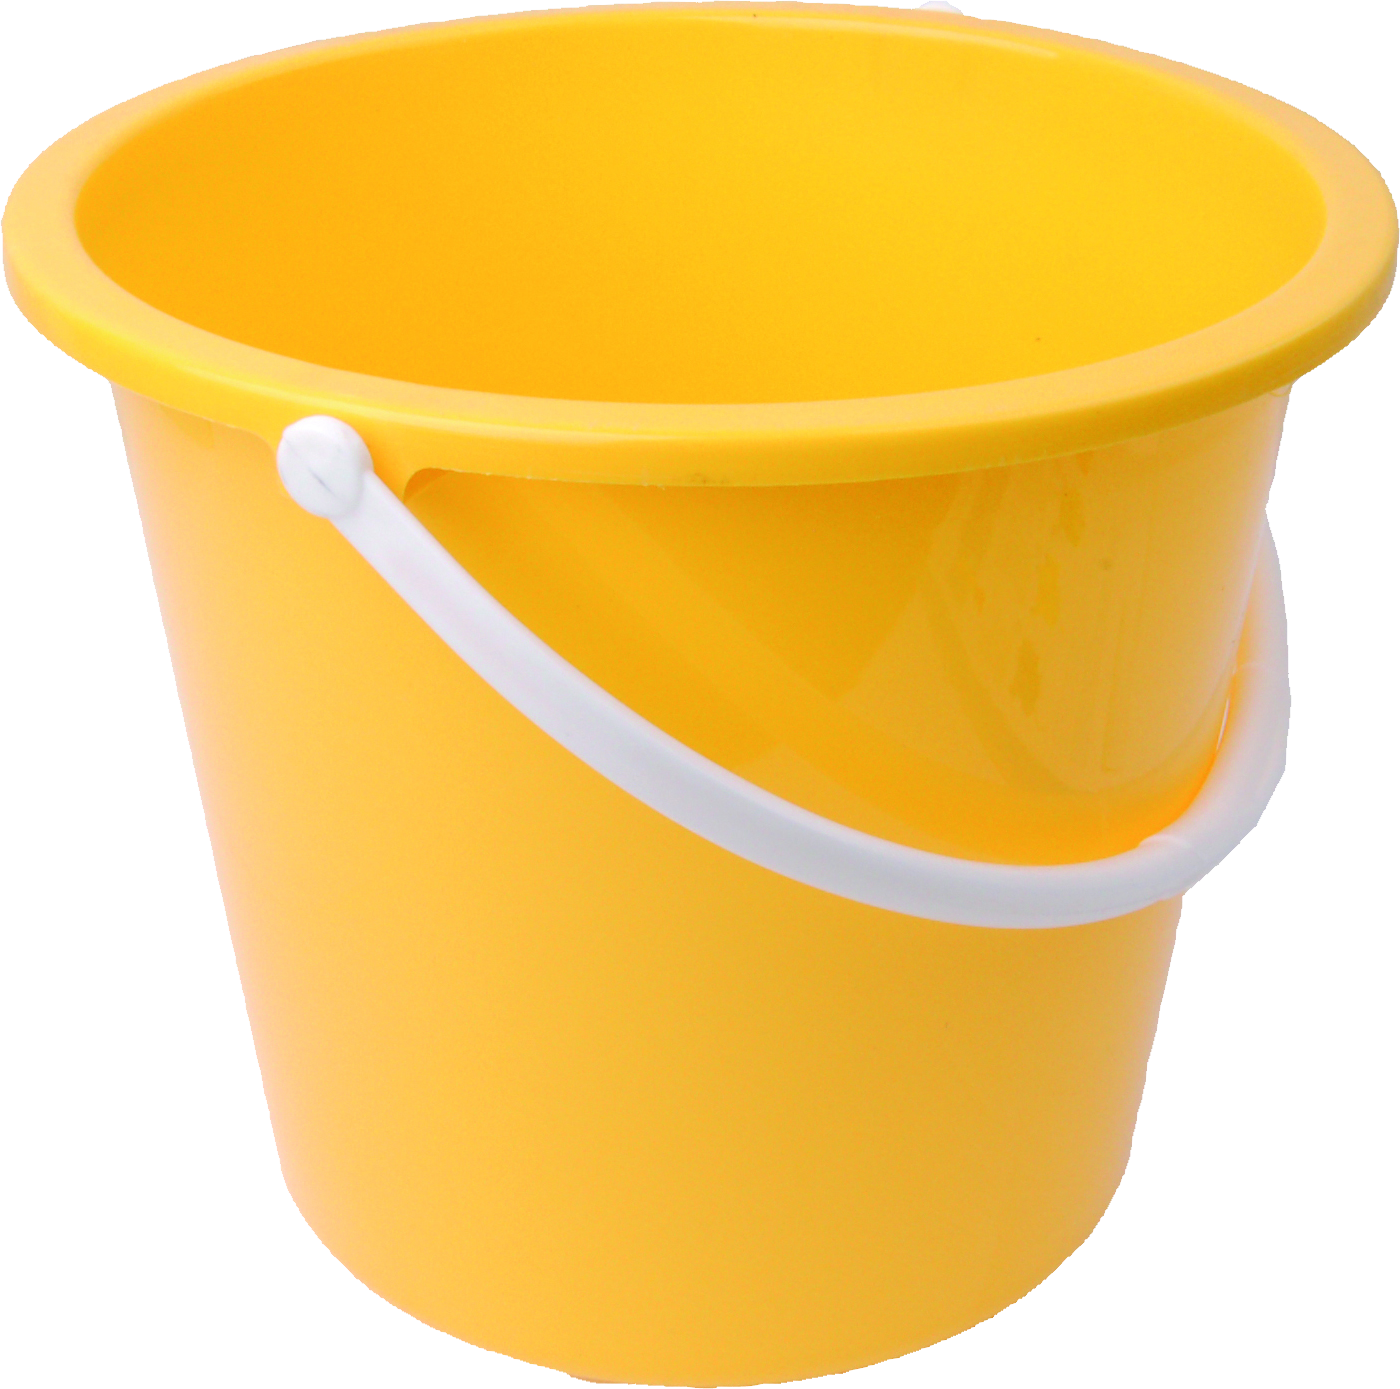 塑料黄色桶